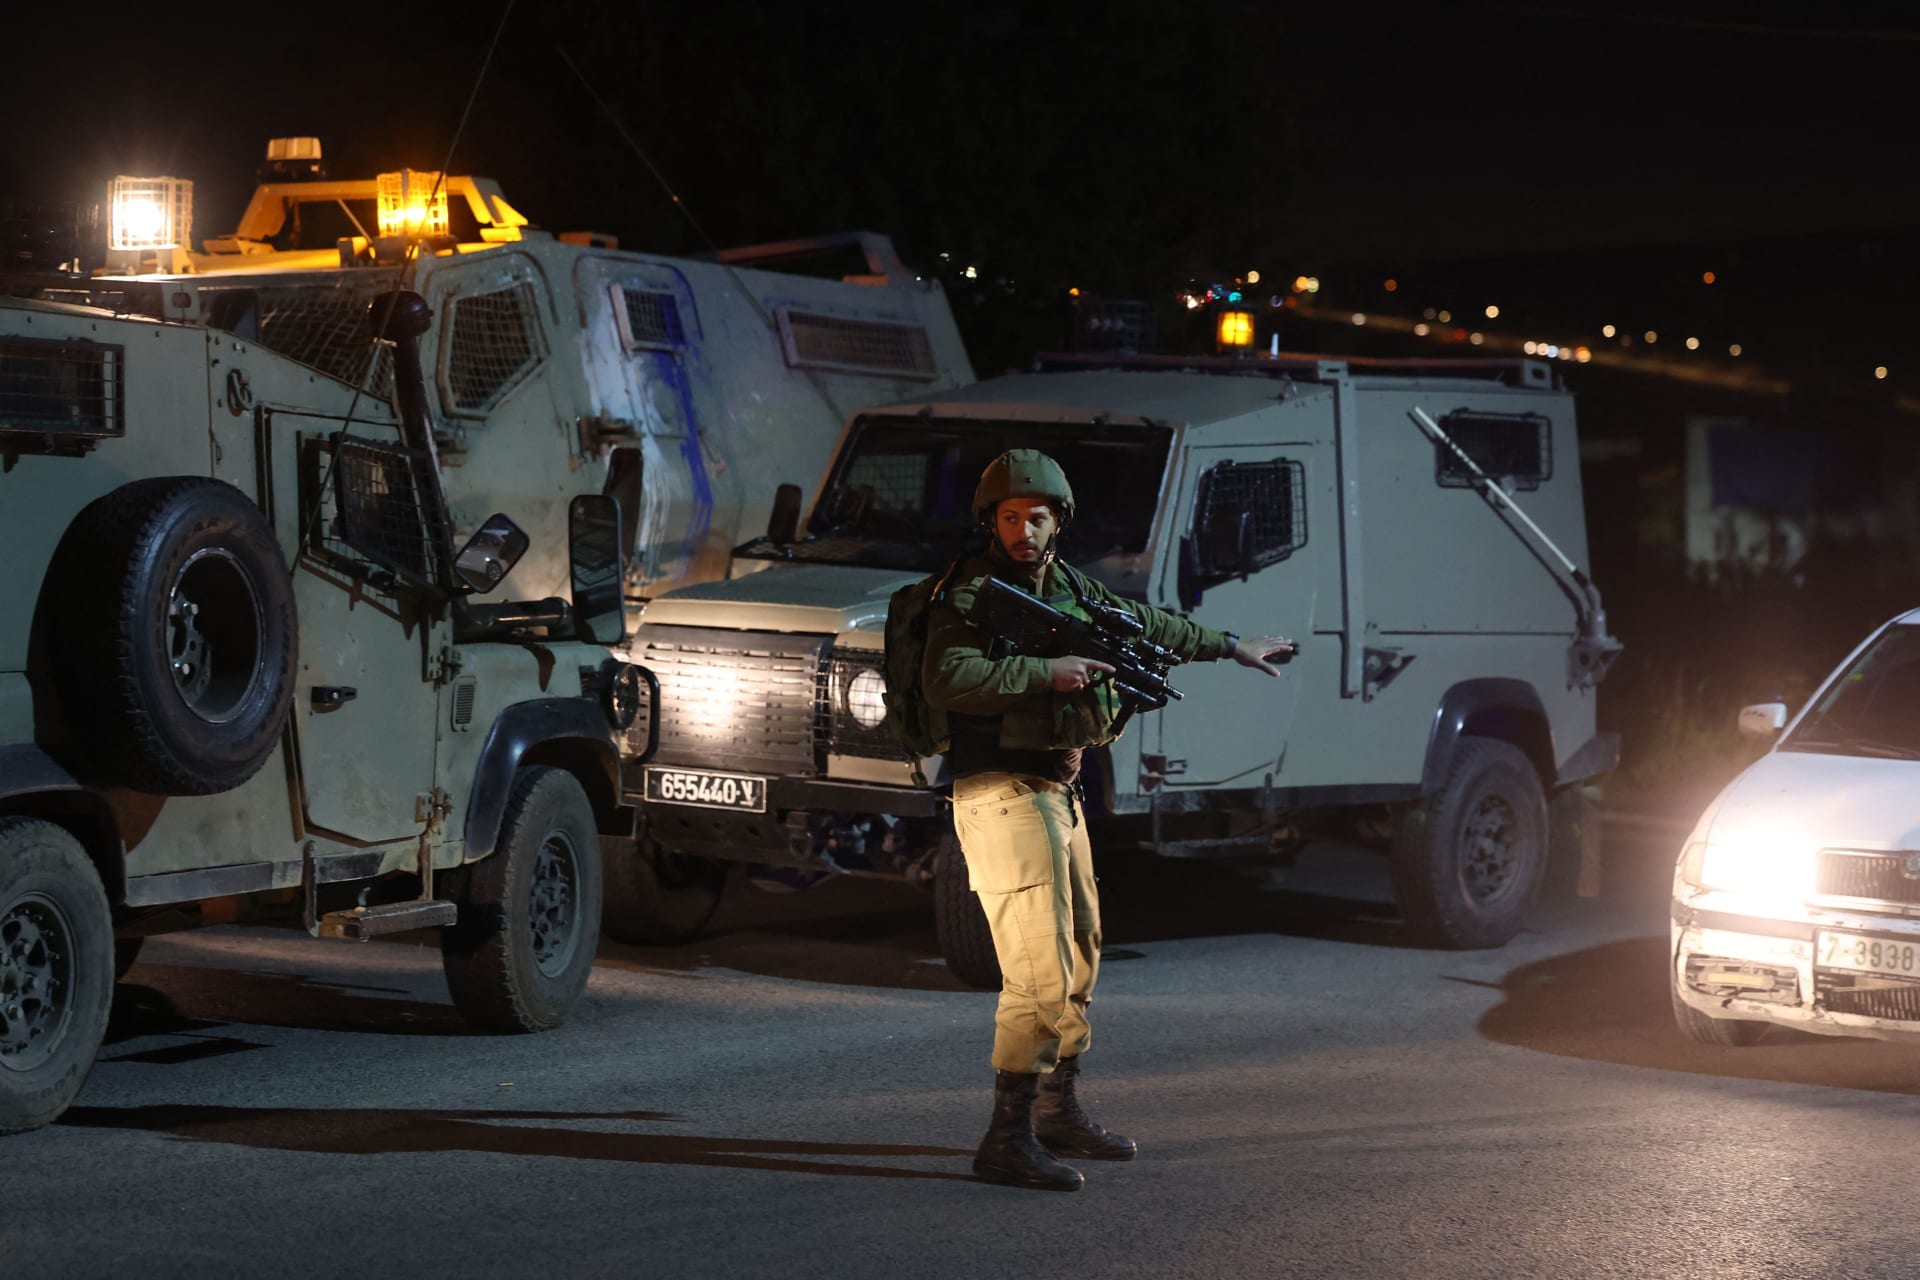 إسرائيل: مقتل مشتبه به بعد أن صدم 3 أشخاص بسيارة في الضفة الغربية